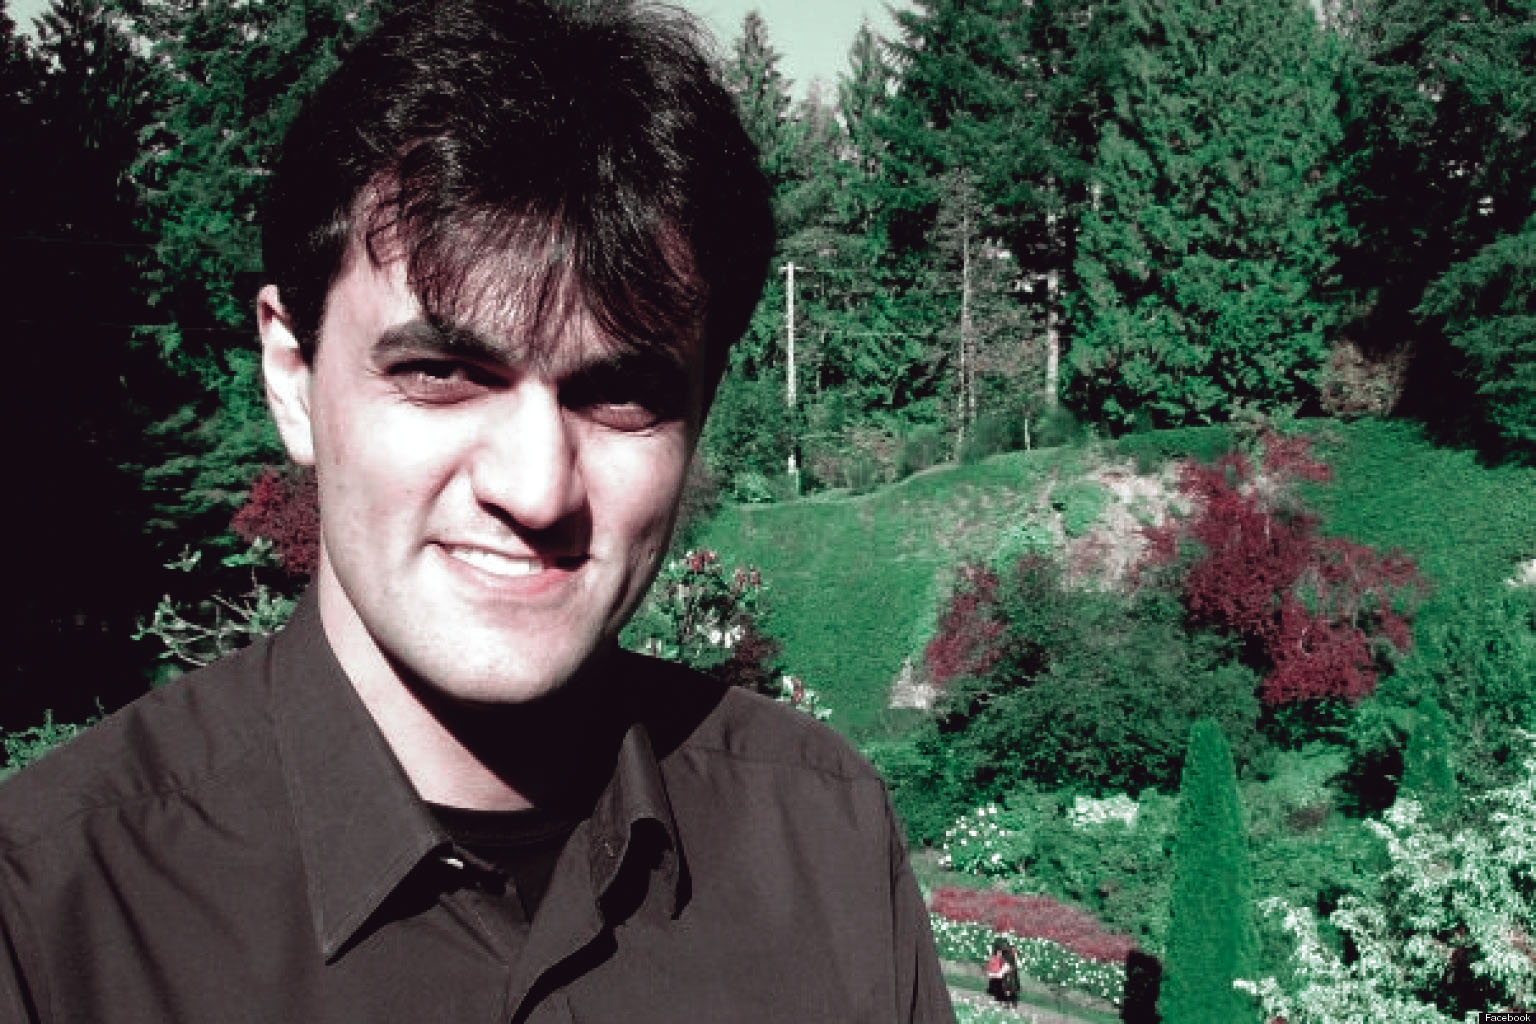 سعید ملک پور، فارغ التحصل دانشگاه صنعتی شریف و محکوم به حبس ابد؛ ۸ سال زندان بدون مرخصی